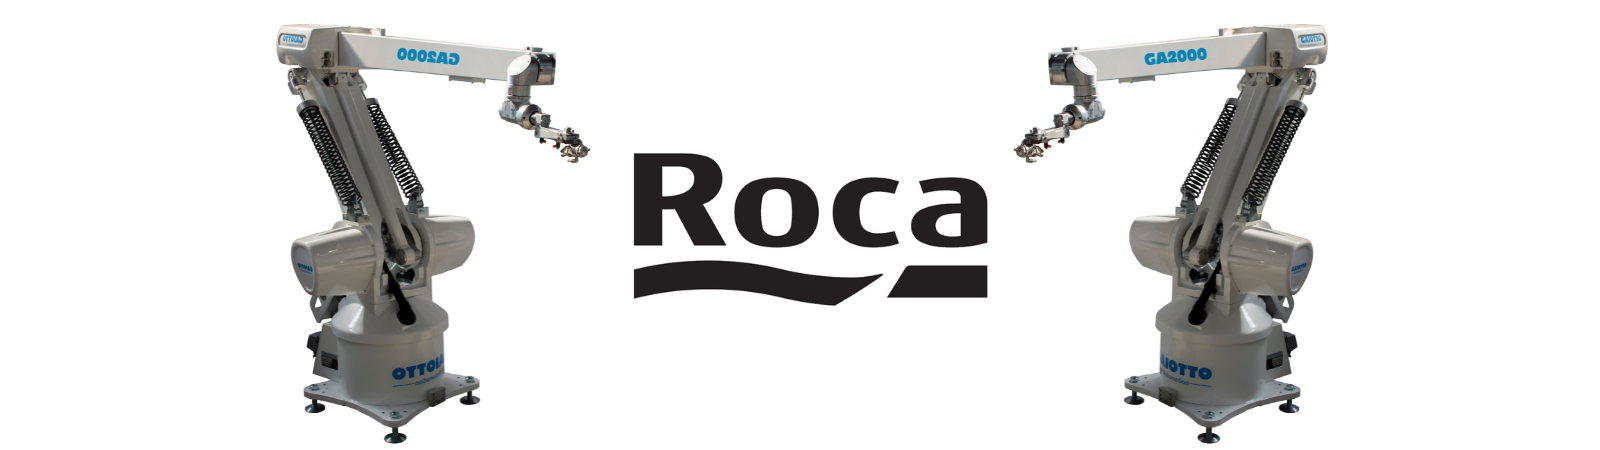 Roca Brasile premia la tecnologia di smaltatura robotizzata SACMI